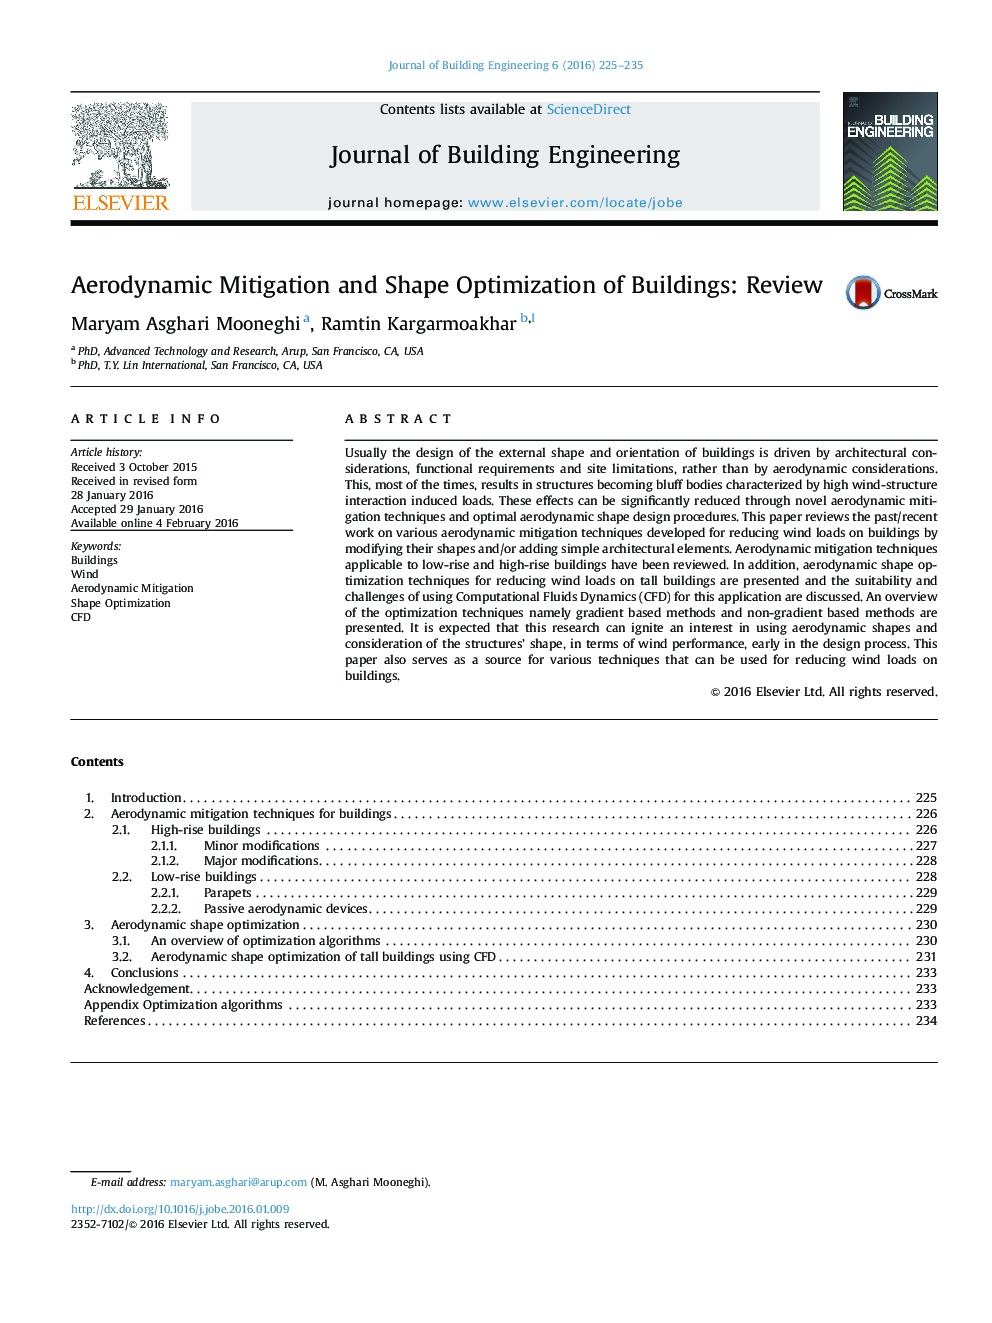 کاهش آیرودینامیک و بهینه سازی شکل ساختمان: نقد و بررسی